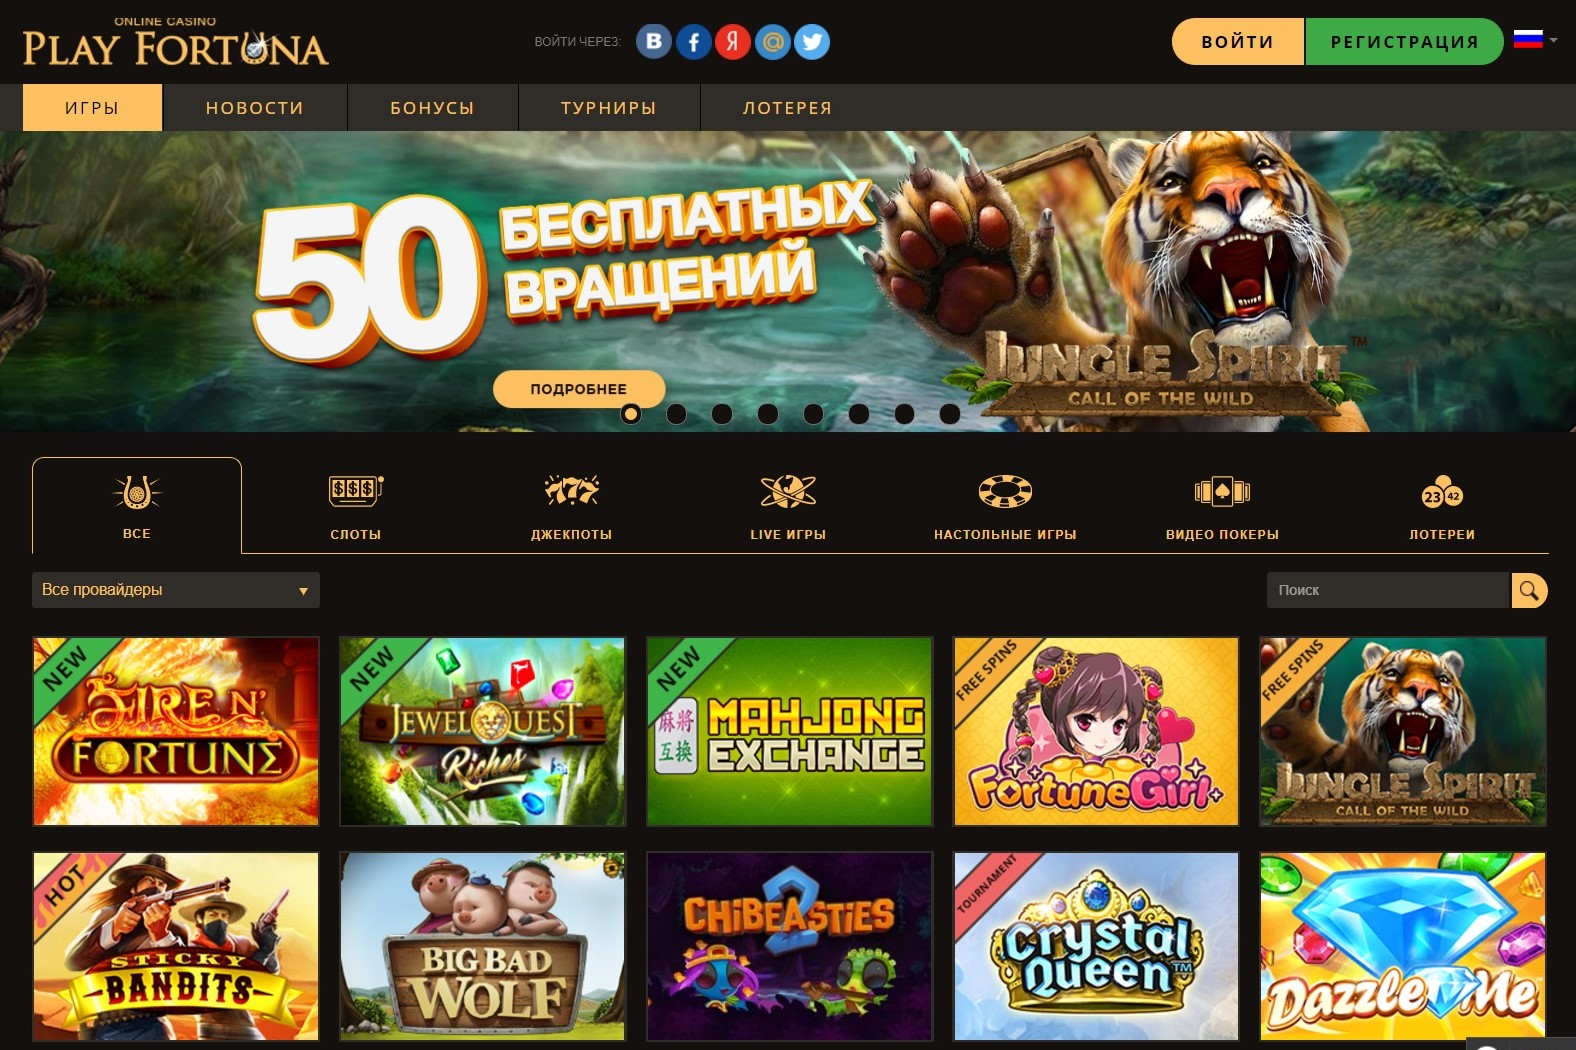 Онлайн казино ПлейФортуна: описание, игры и правила